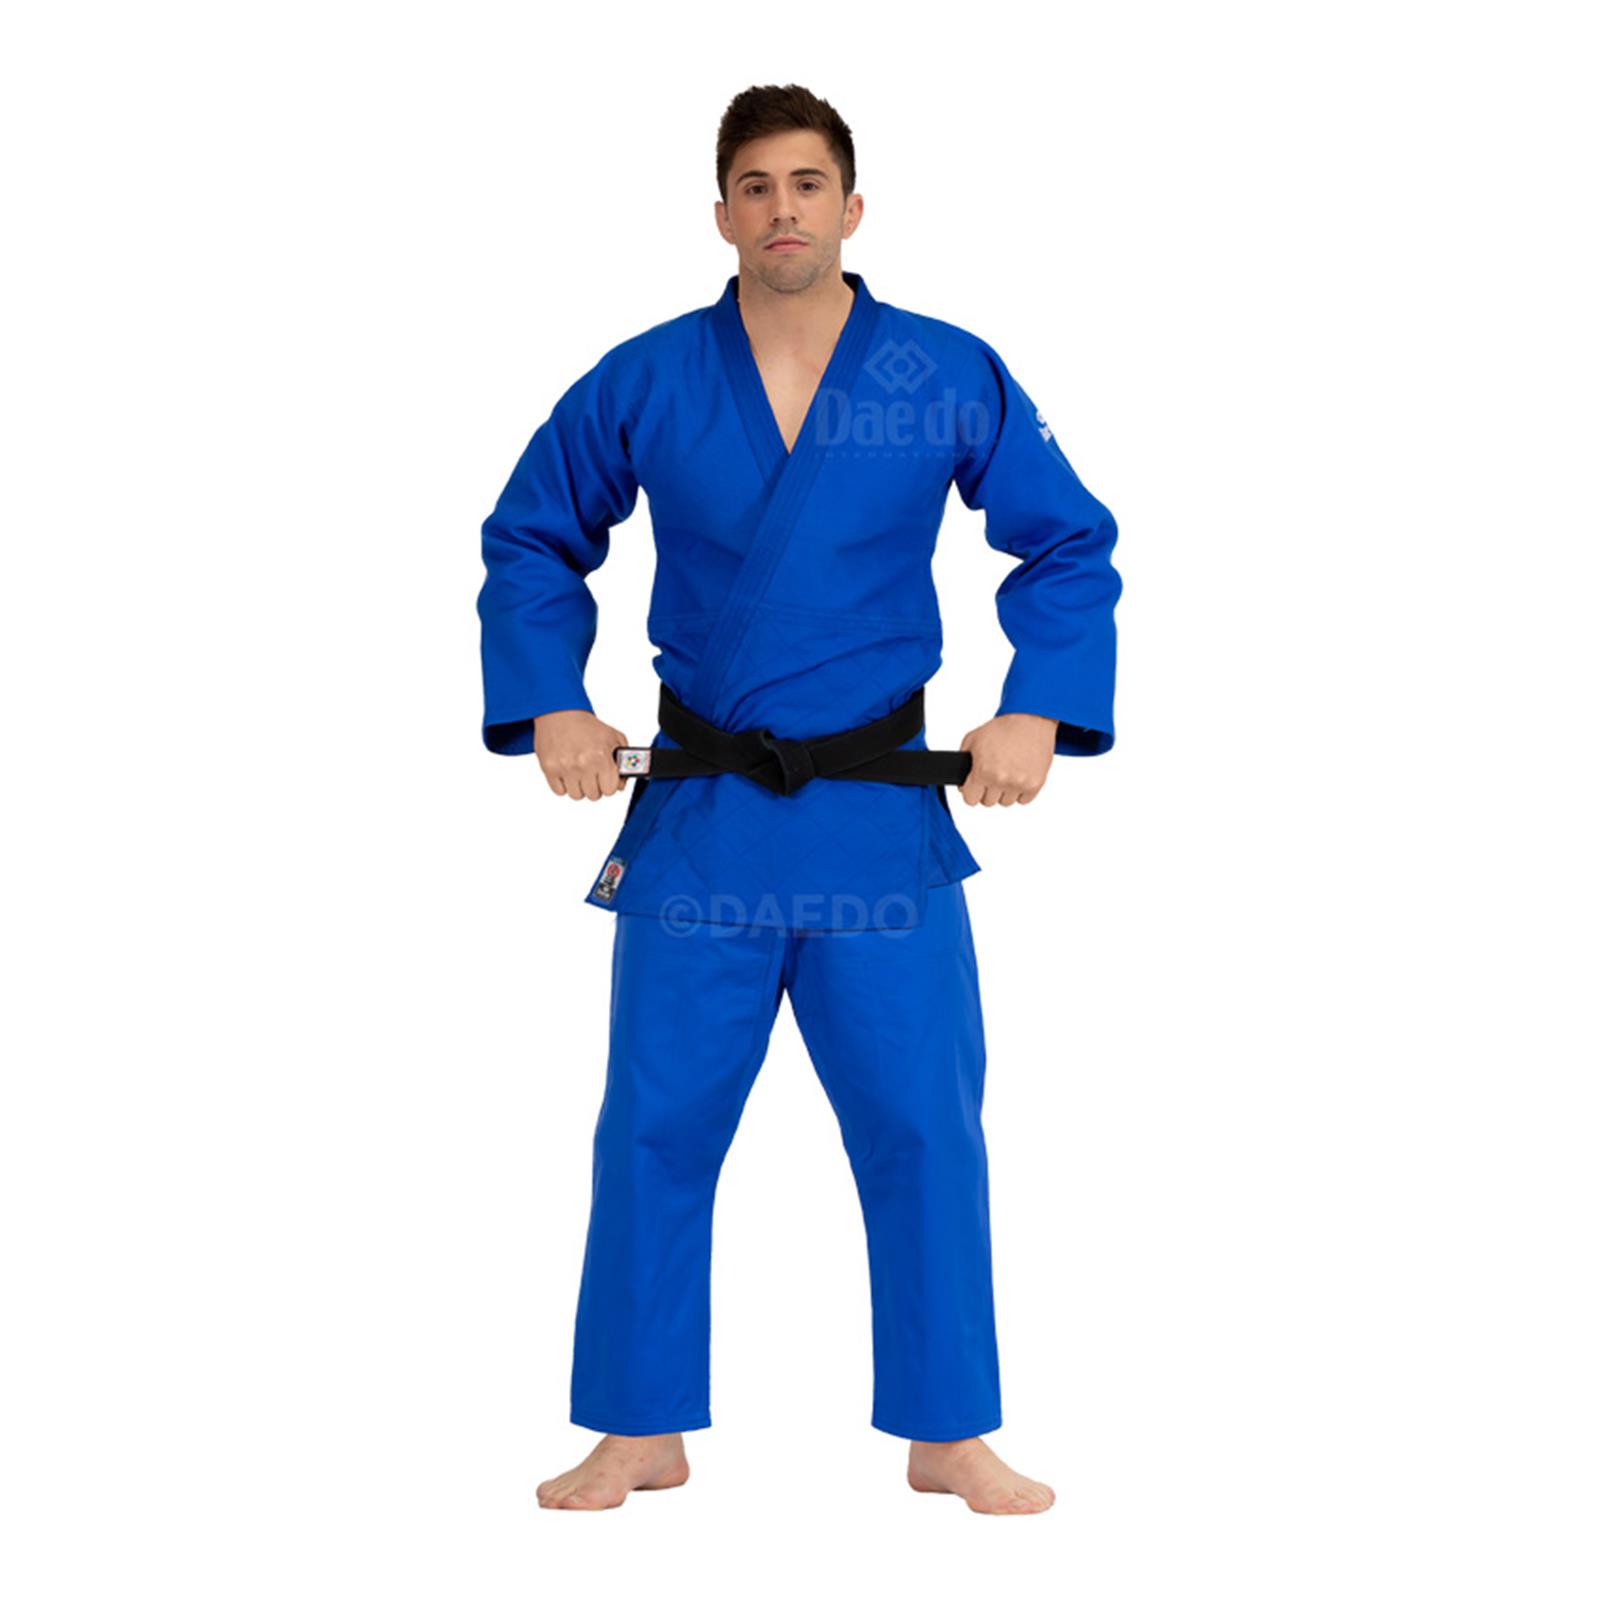 Dae Do Judogi da Competizione Elite az (2° - 150cm - BLU)